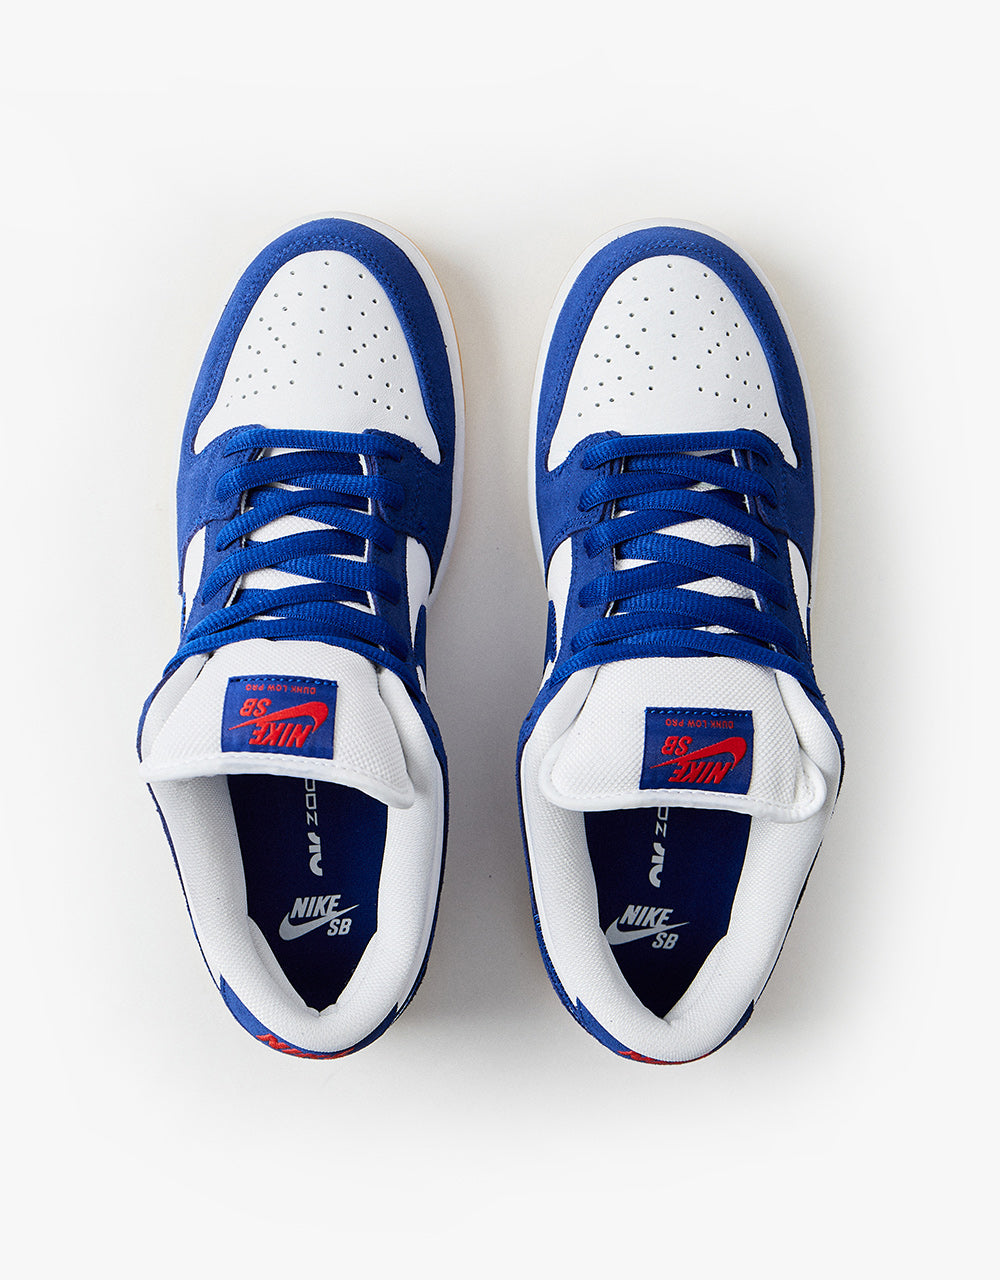 Nike SB \'Dodgers\' Dunk Low Pro Premium Skate Shoes - Deep Royal Blue/D –  Route One Launches